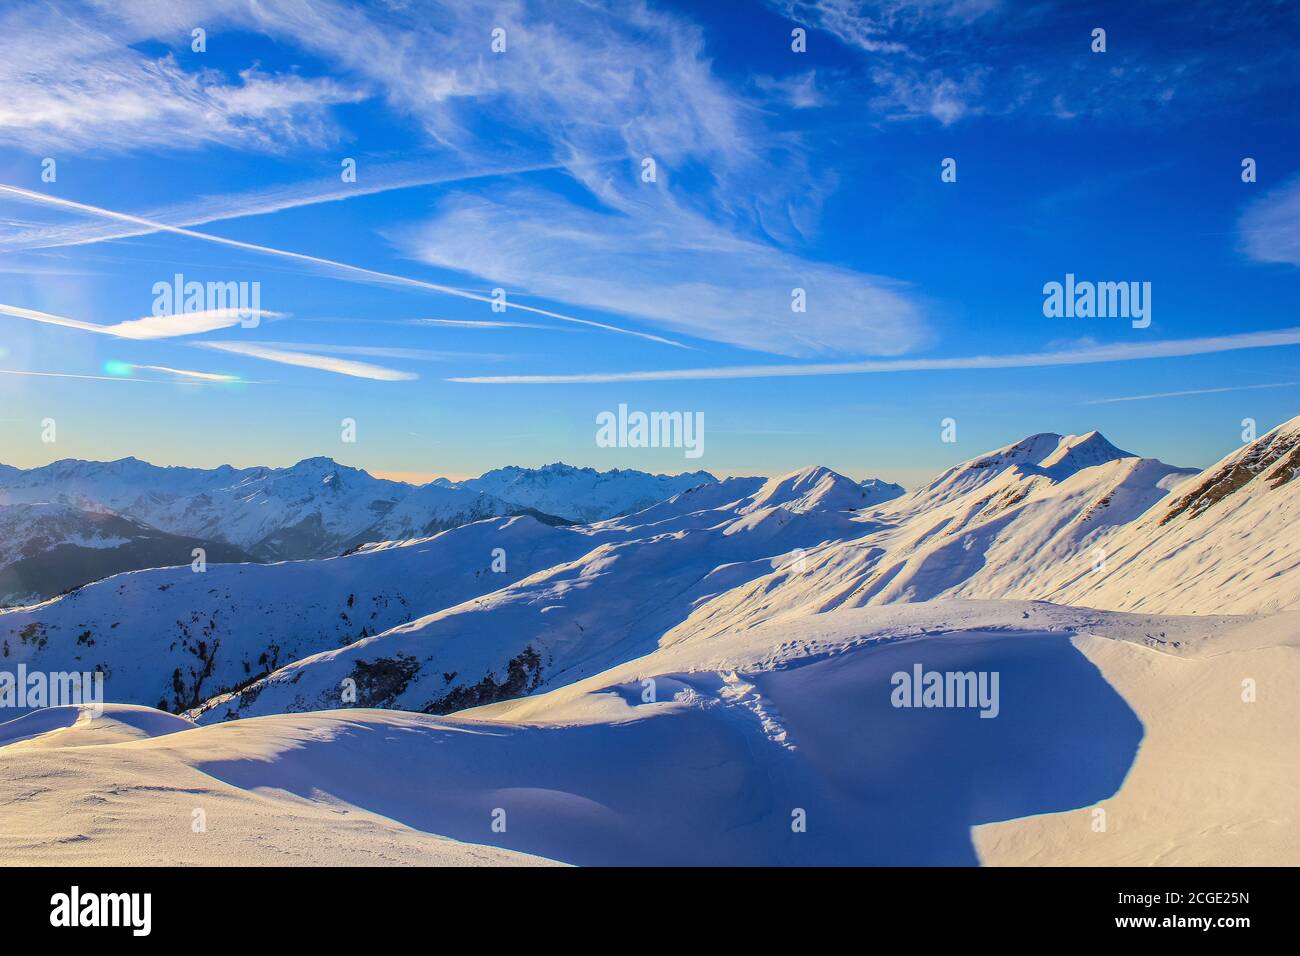 Vue sur le domaine skiable de Paradiski la Plagne, Alpes françaises Banque D'Images